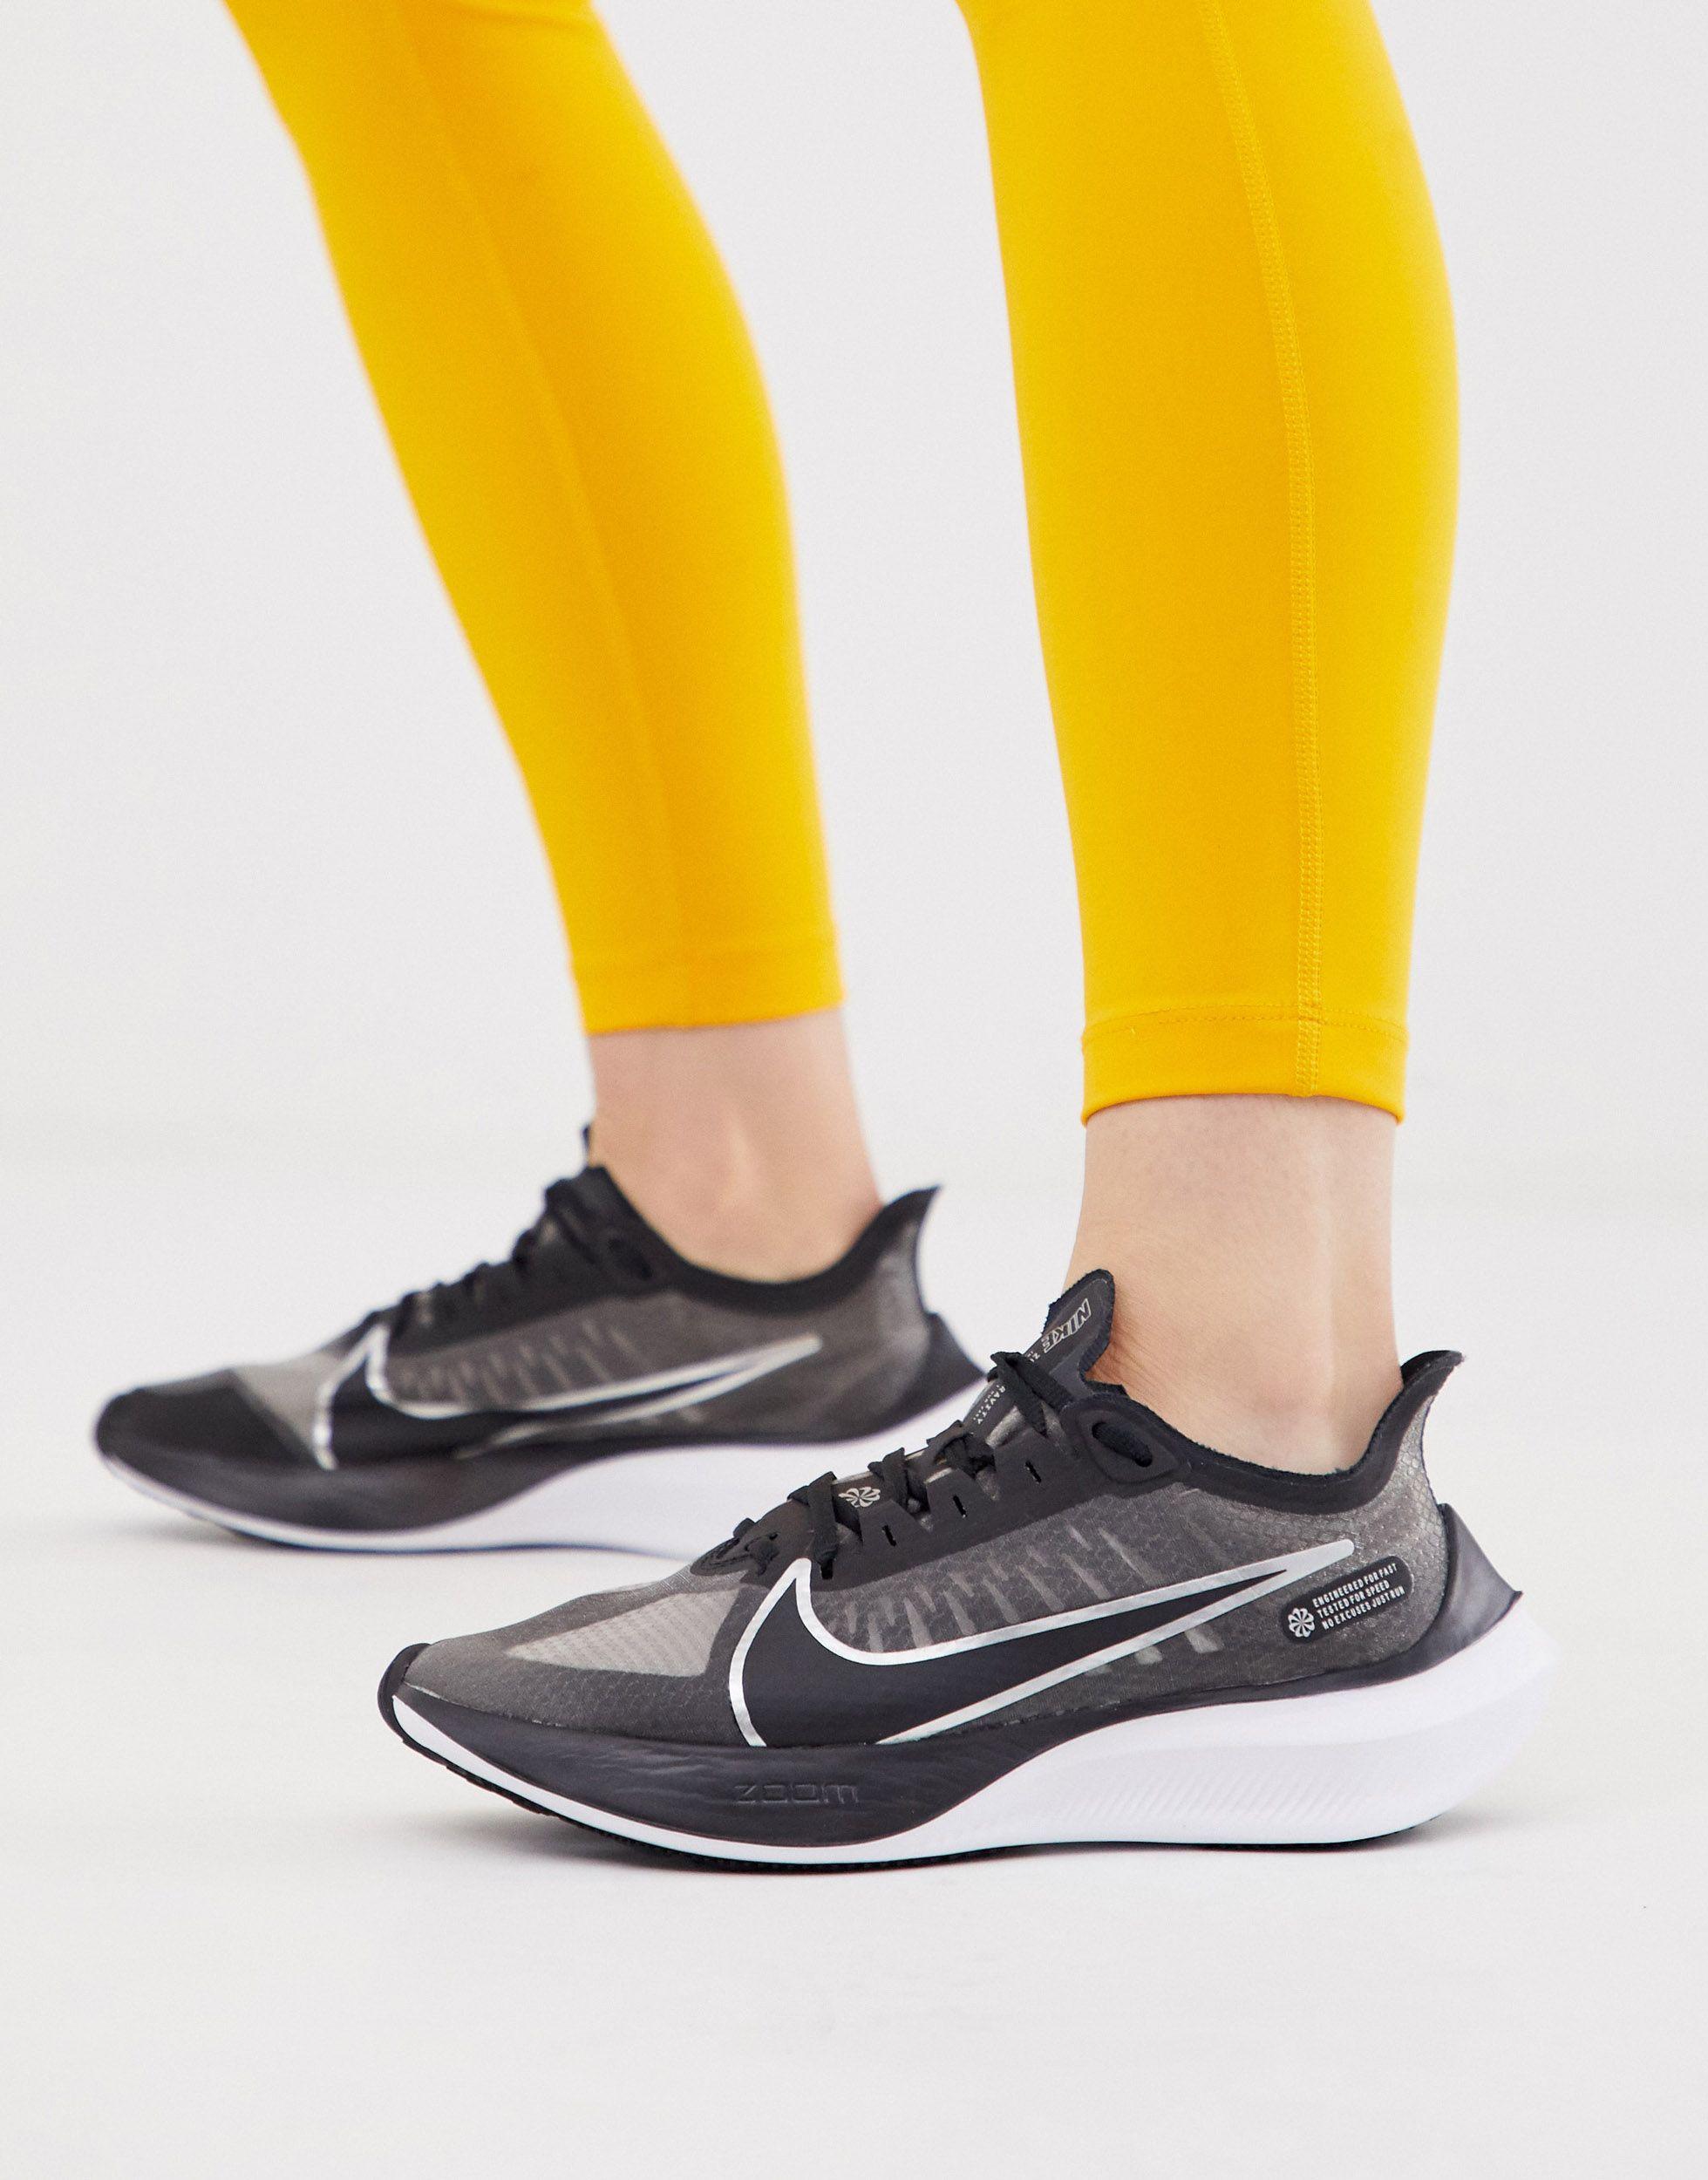 women's nike zoom gravity running shoes